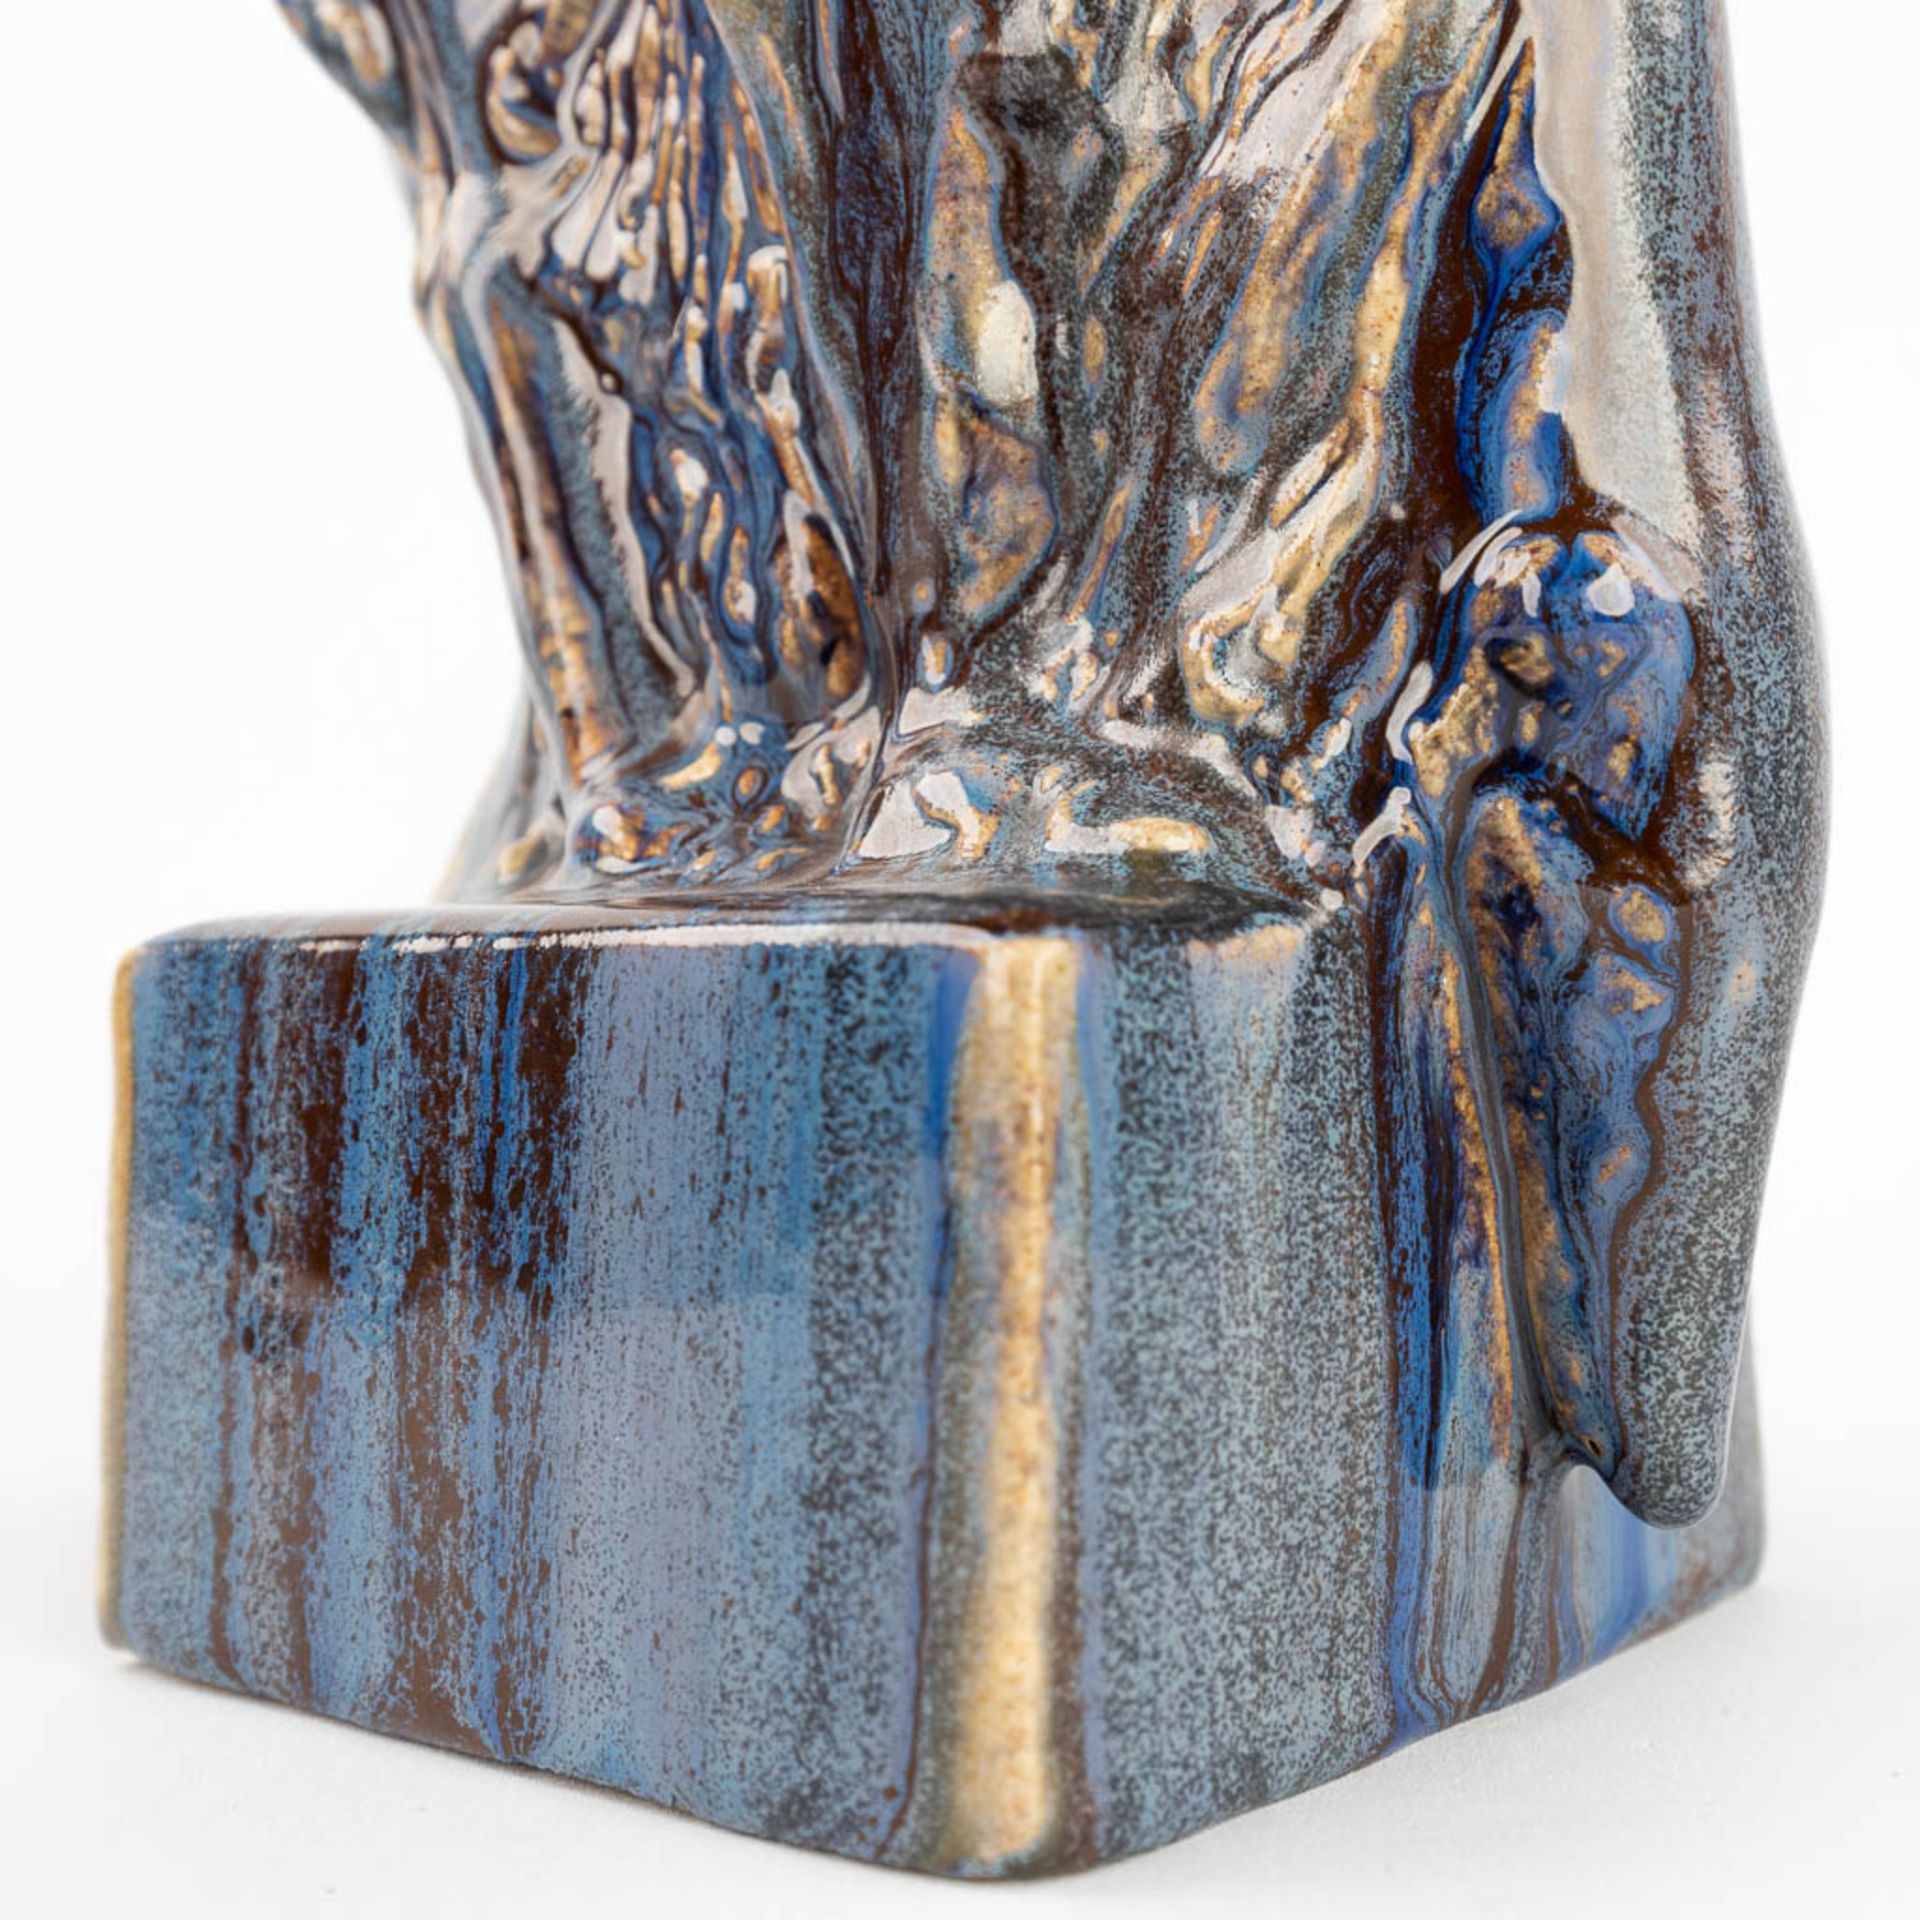 Domien INGELS (1881-1946) 'Greyhound' glazed ceramics. (L:9,5 x W:14,5 x H:25 cm) - Image 9 of 9